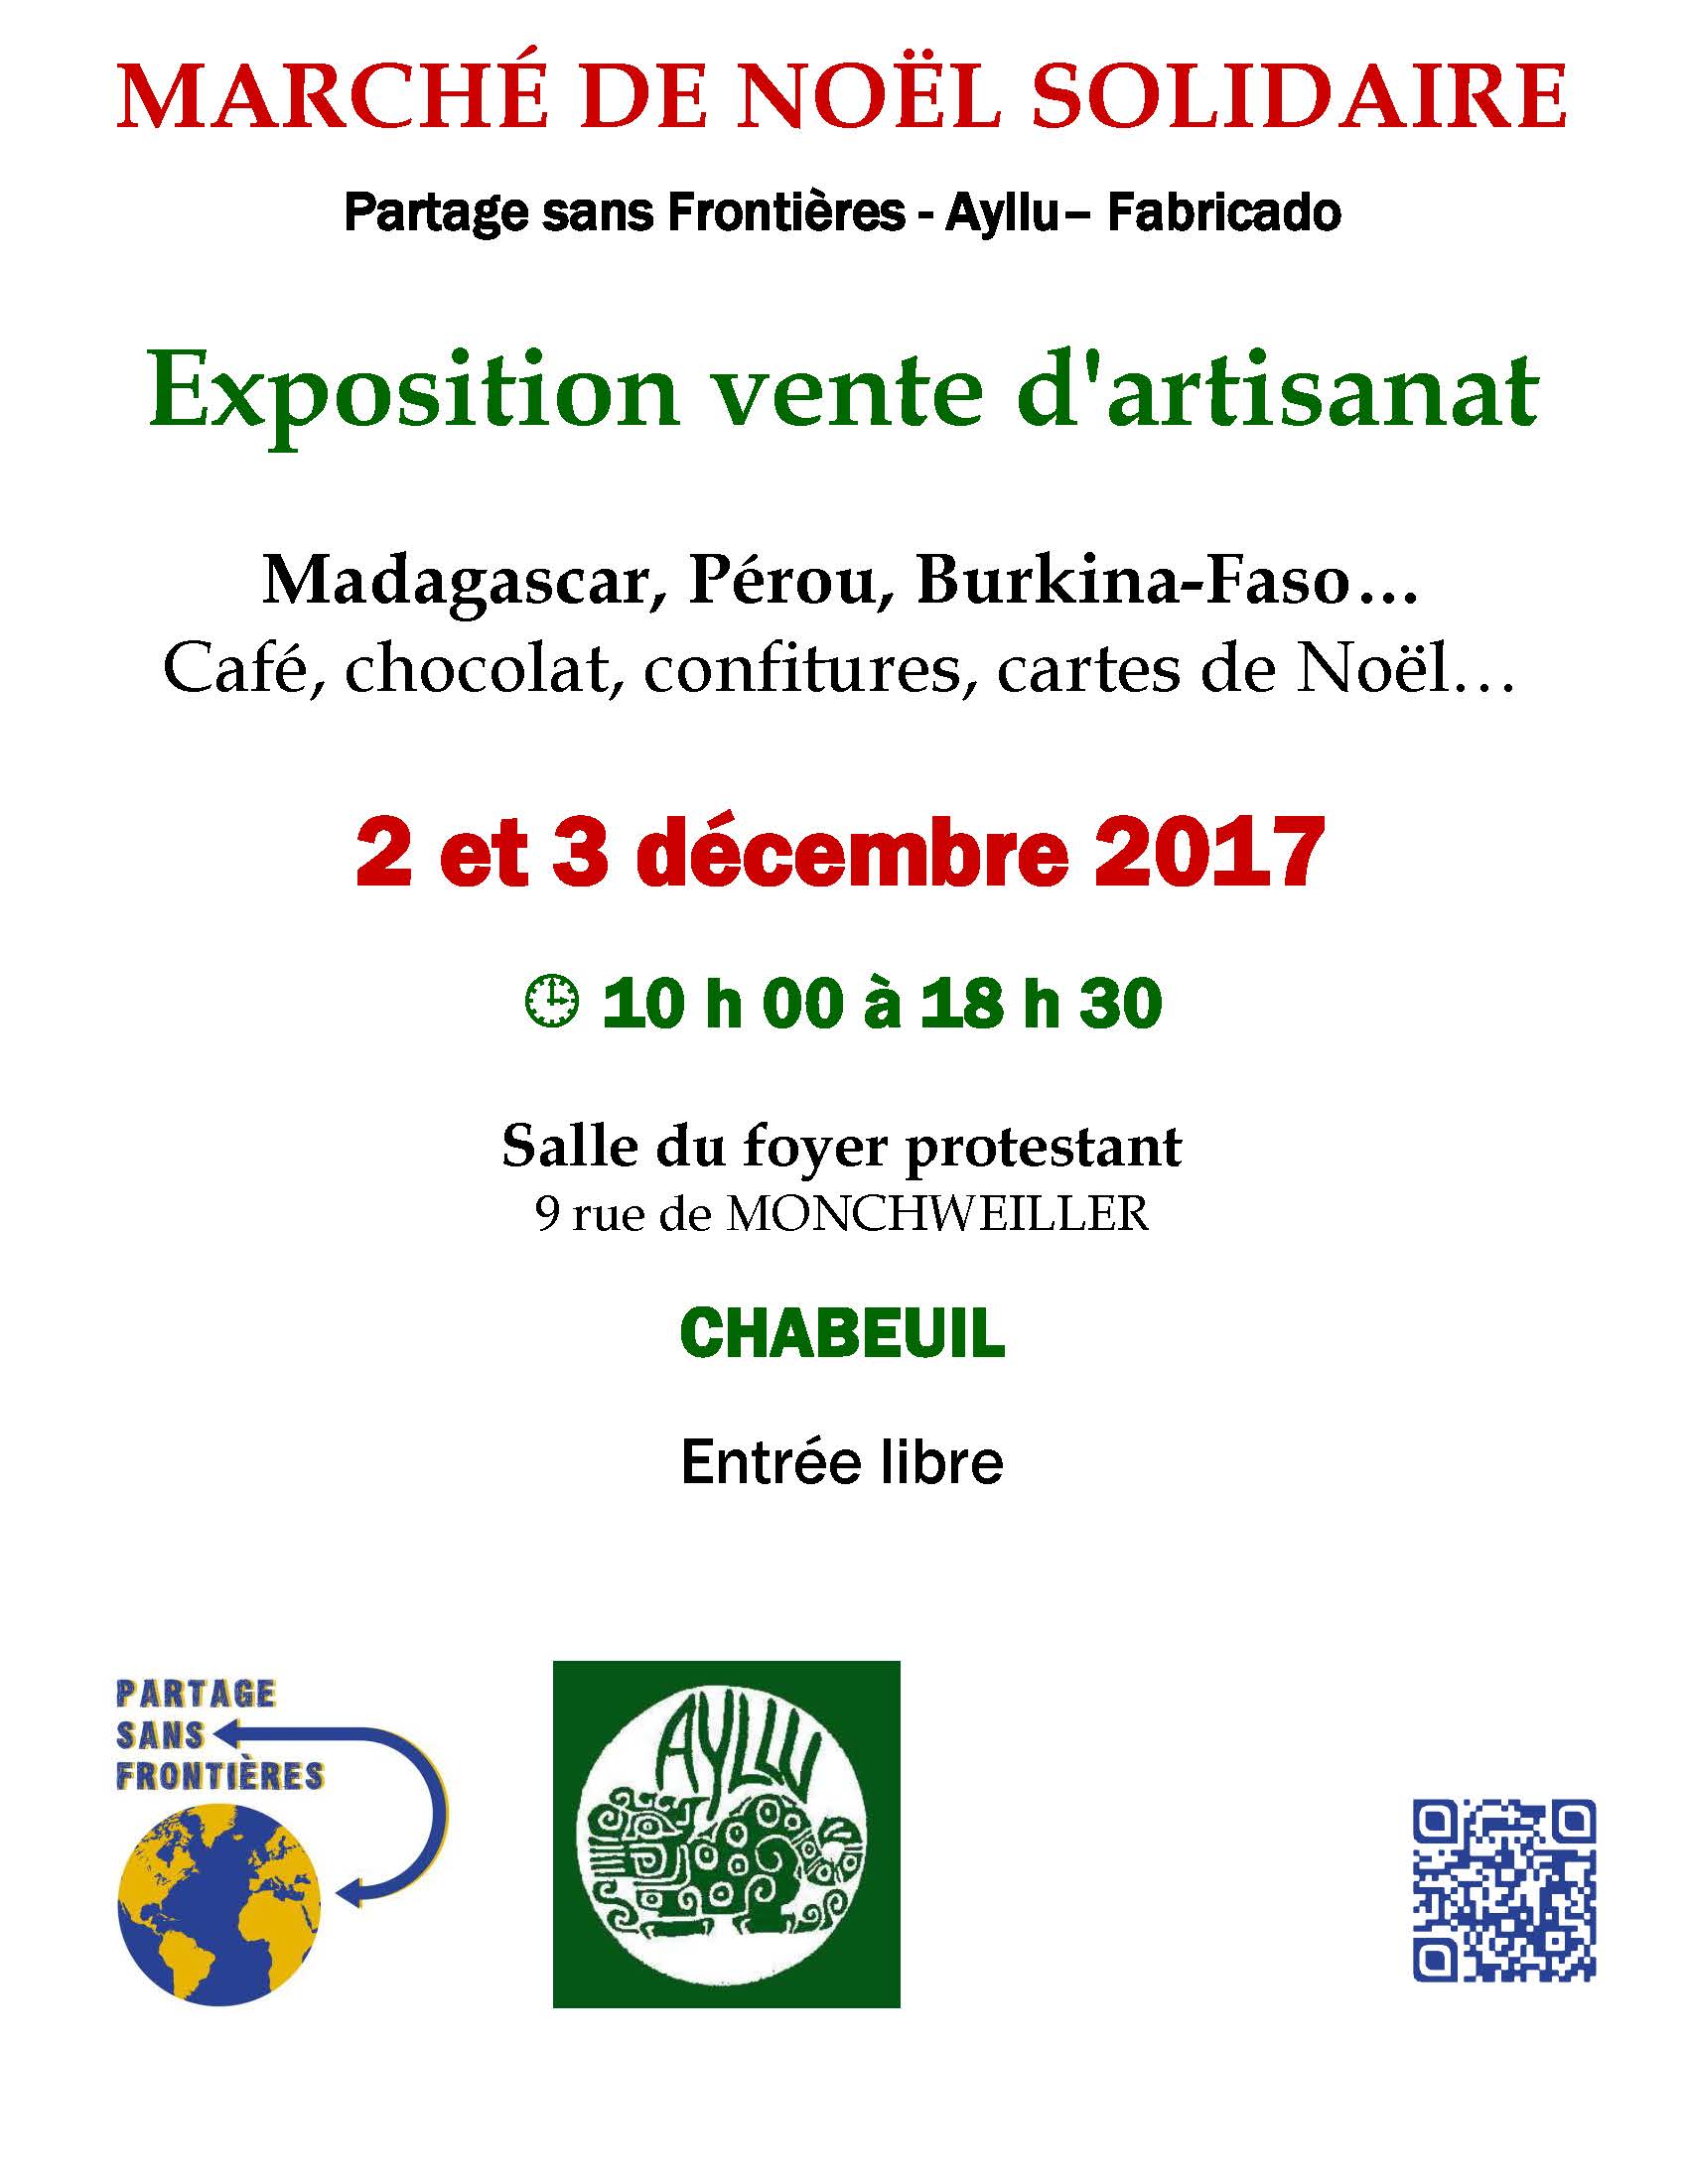 Marché de Noël solidaire 2017 de Chabeuil